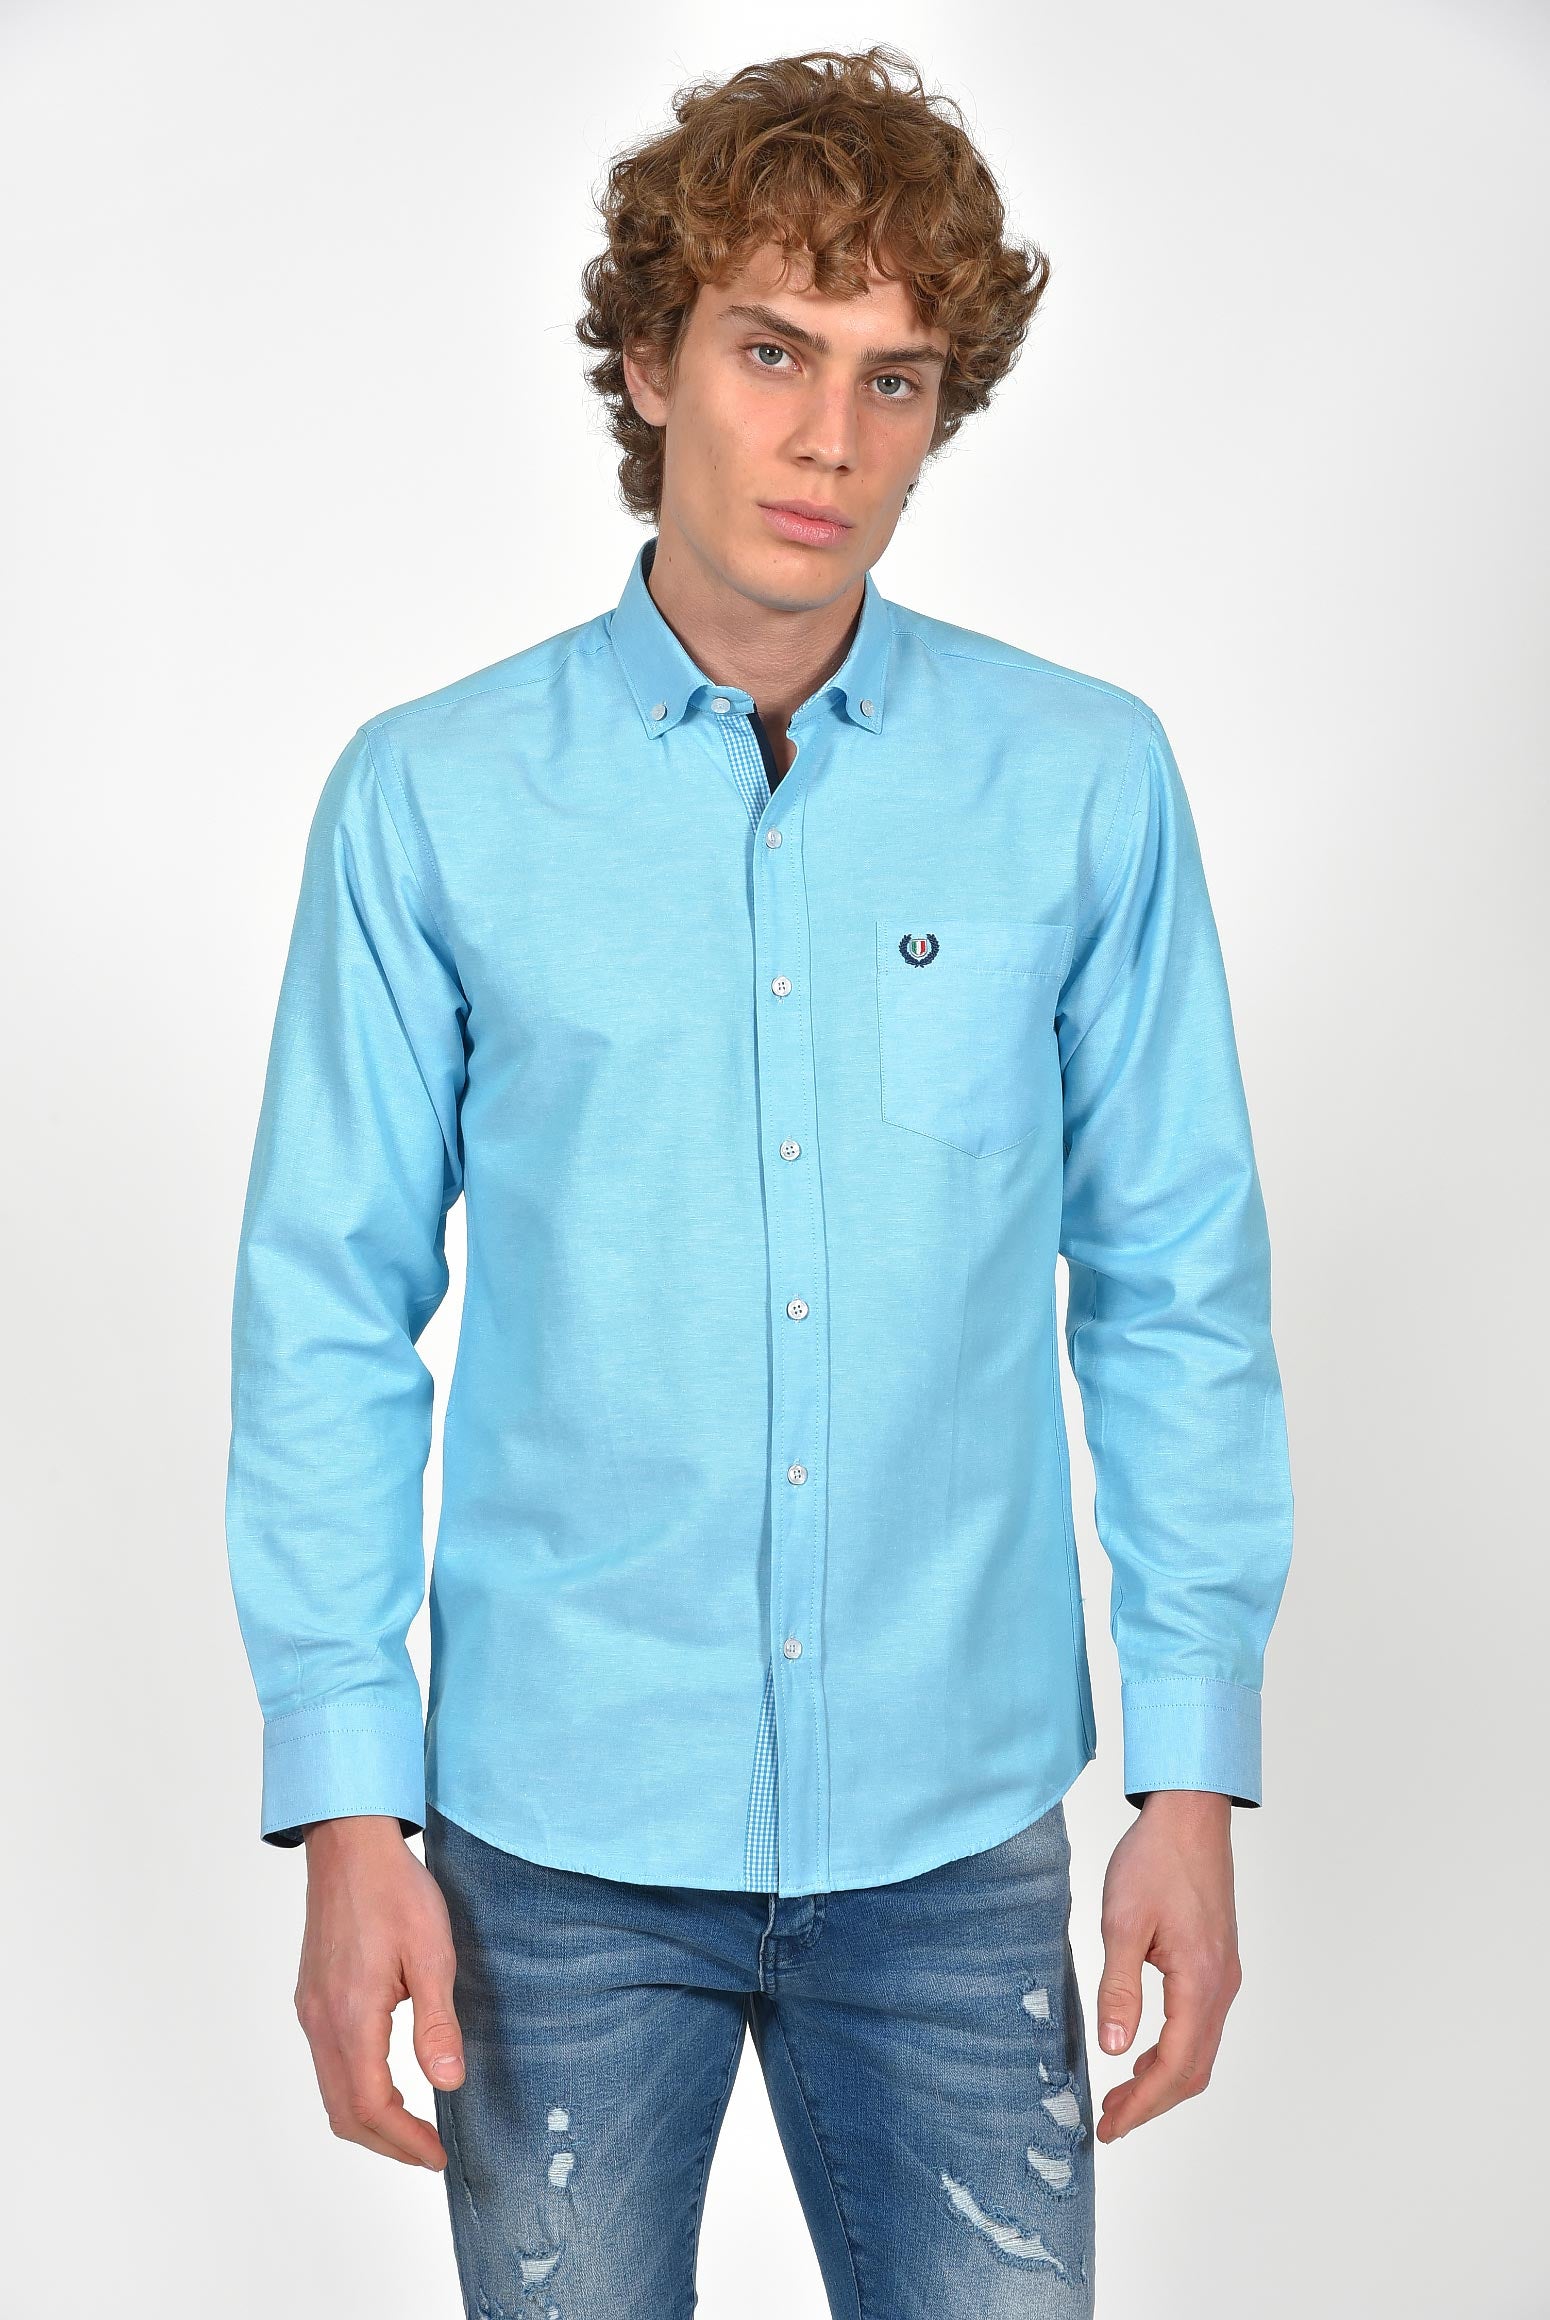 ανδρικό-oxford-πουκάμισο-με-διακριτικό-σήμα